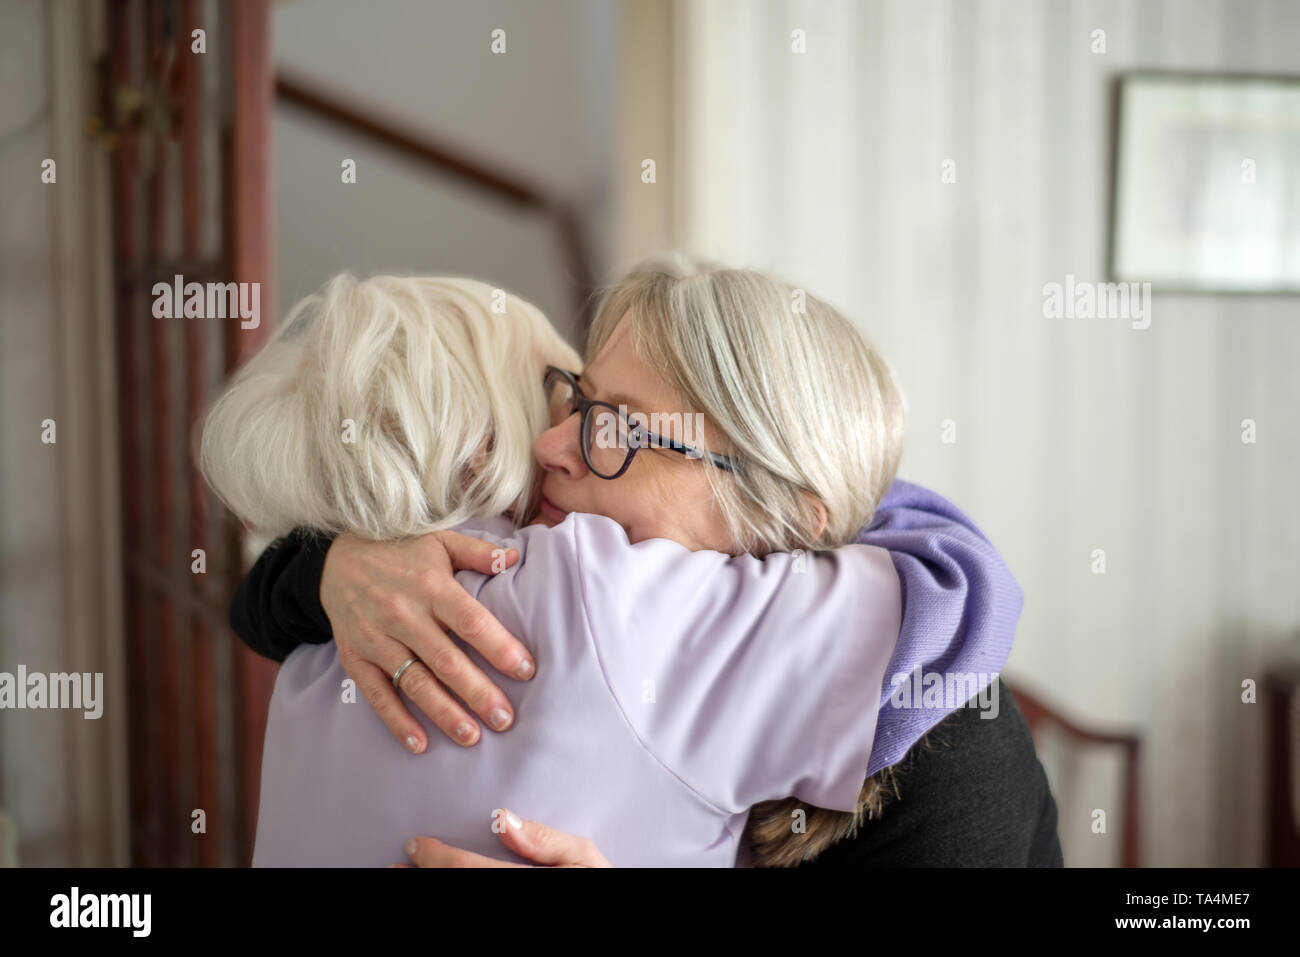 La madre non vuole che sua figlia a lasciare dopo una visita per vedere la sua anziani e non vedenti madre,la figlia abbracci e dice addio a sua mamma, b Foto Stock